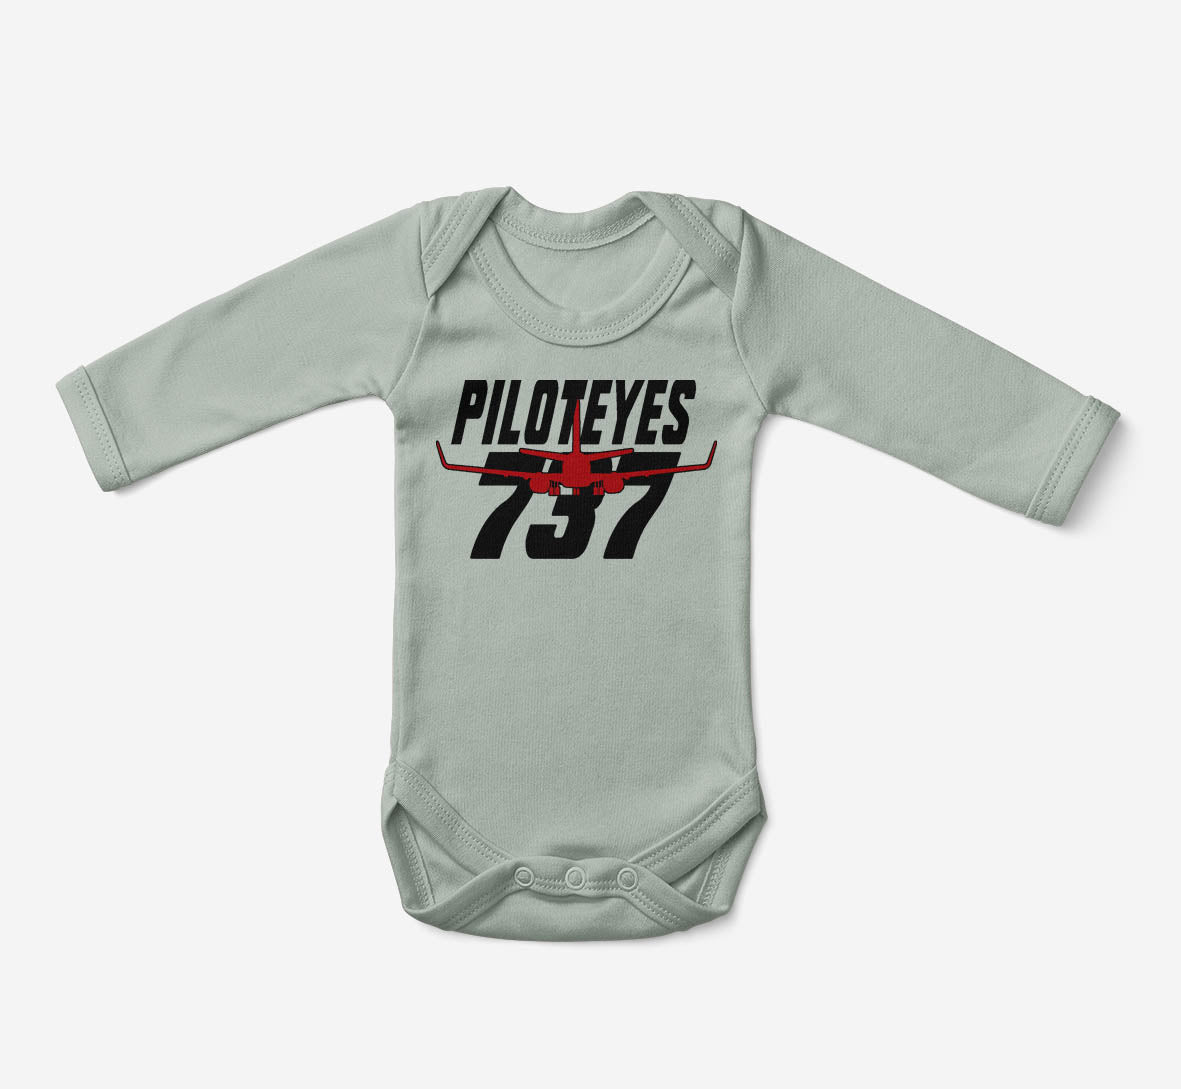 Amazing Piloteyes737 Designed Baby Bodysuits